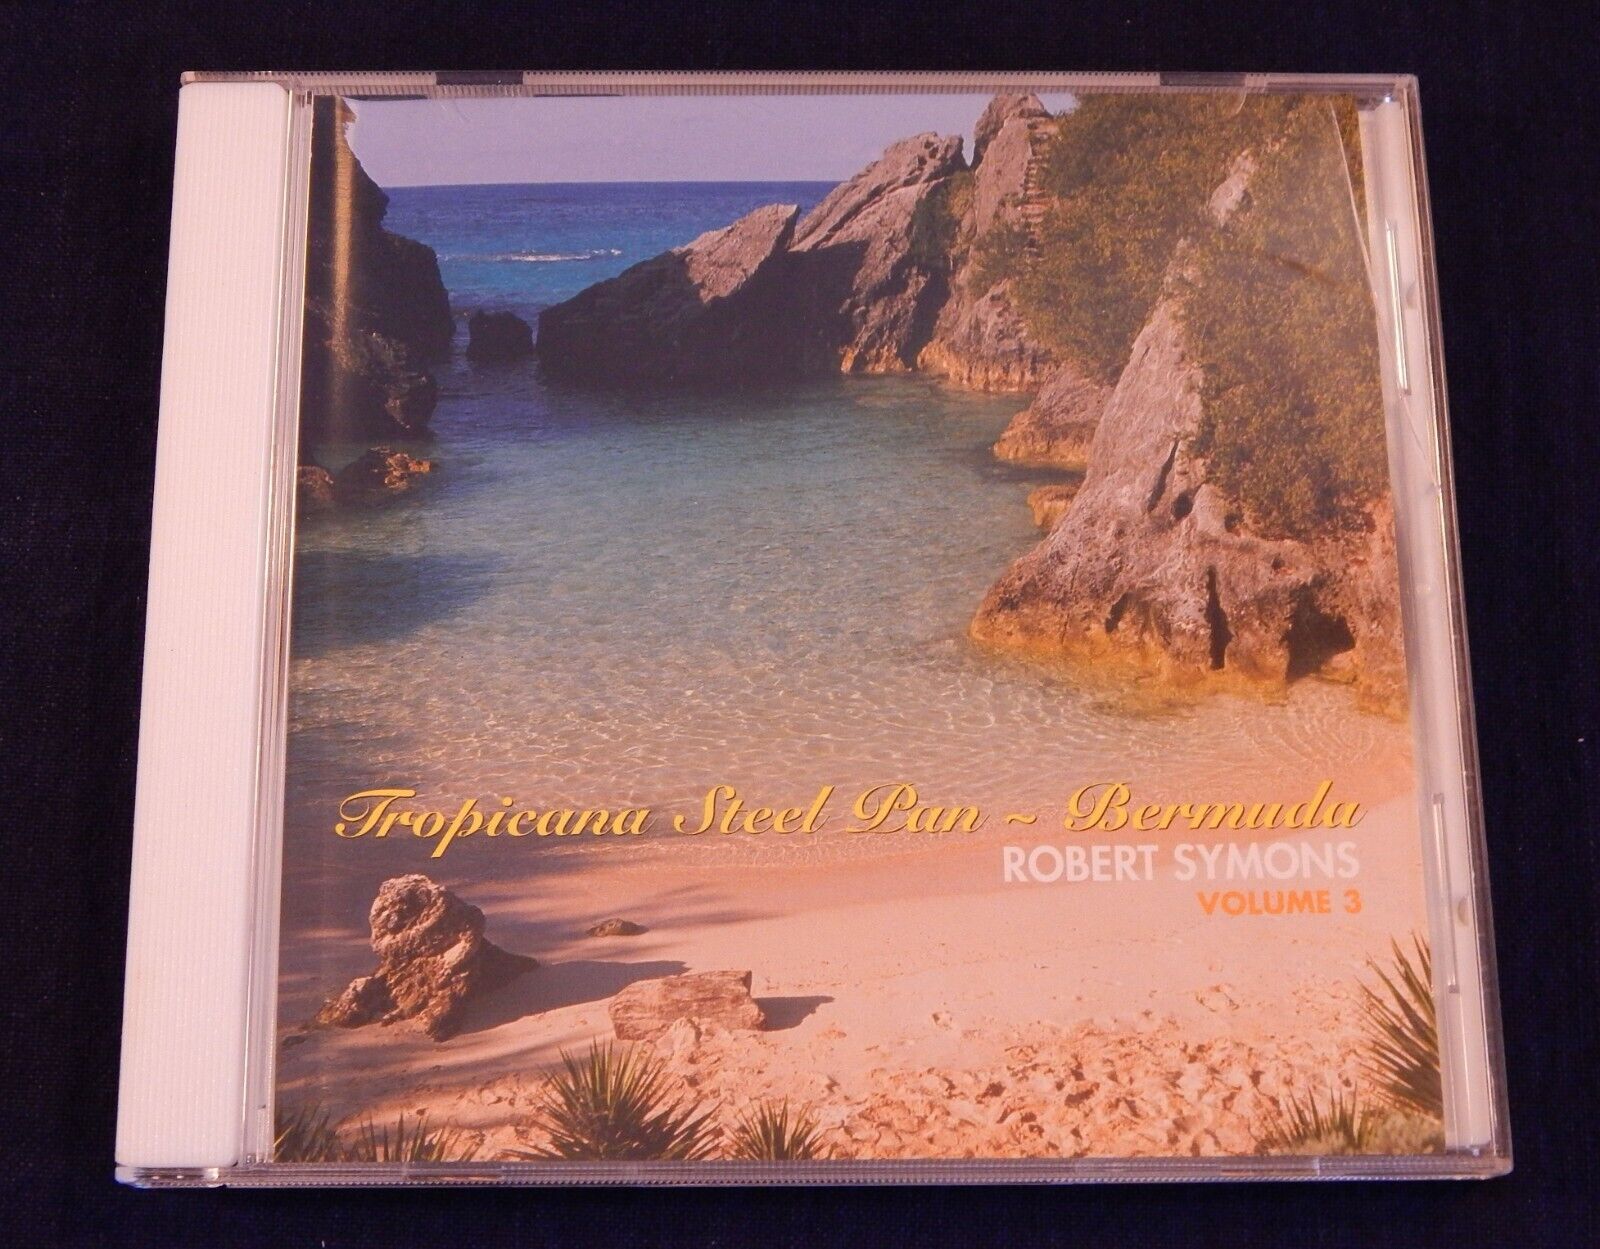 Robert Symons Tropicana Steel Pan Bermuda CD Volume 3 STAND BY ME + 11 HIT SONGS